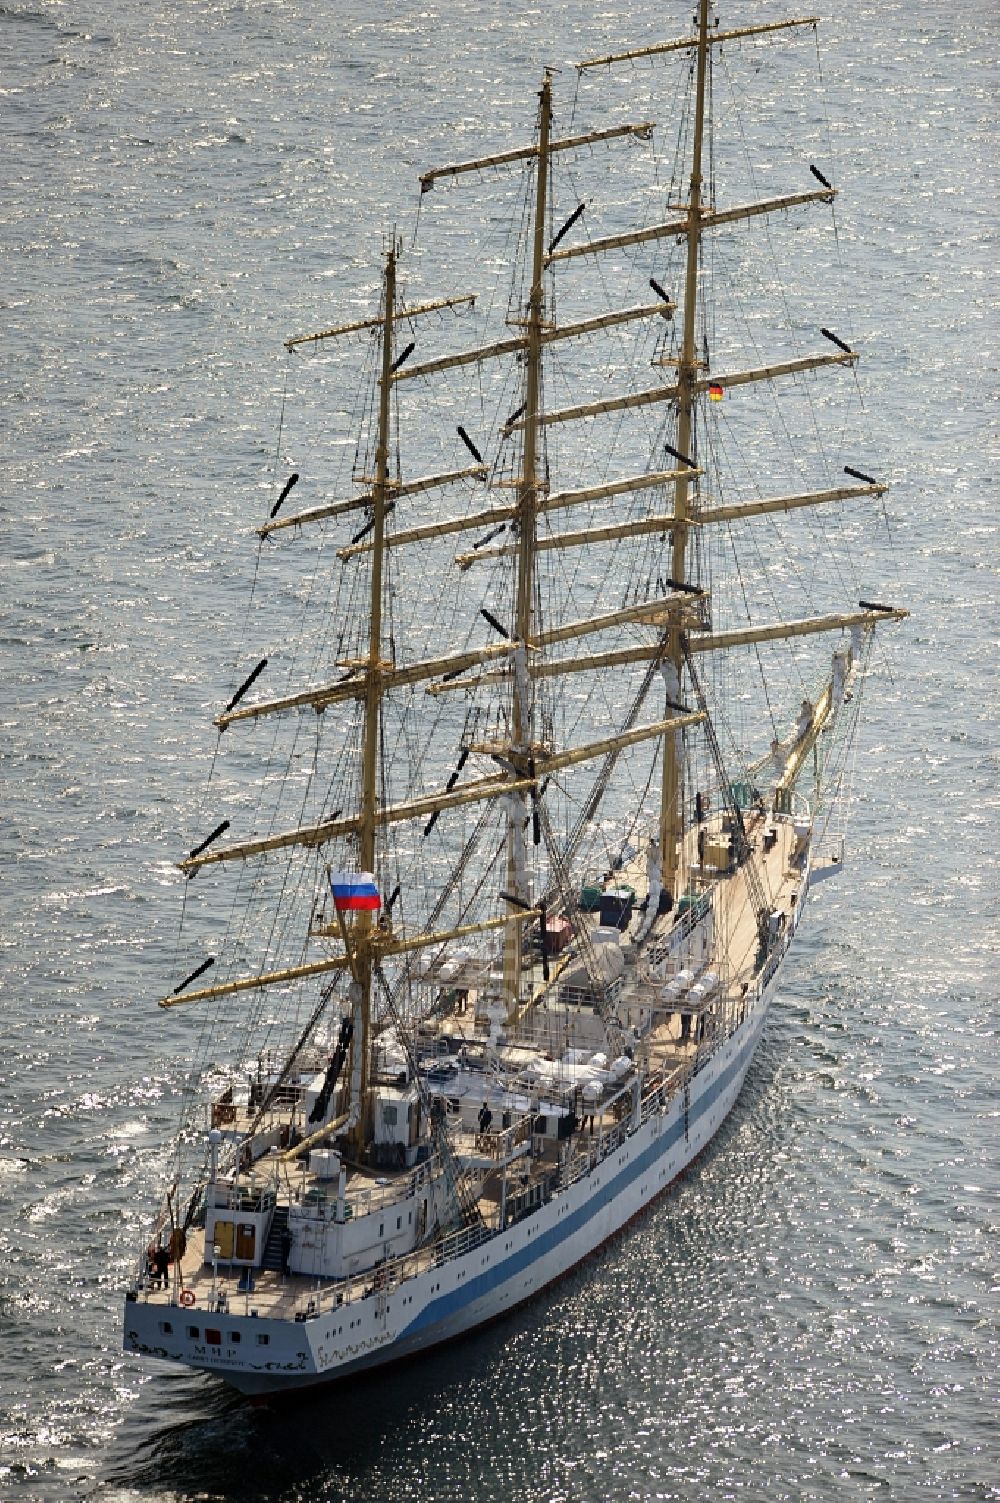 Luftbild Rostock - Segelschiff MIR in der Ostsee vor Rostock in Mecklenburg-Vorpommern